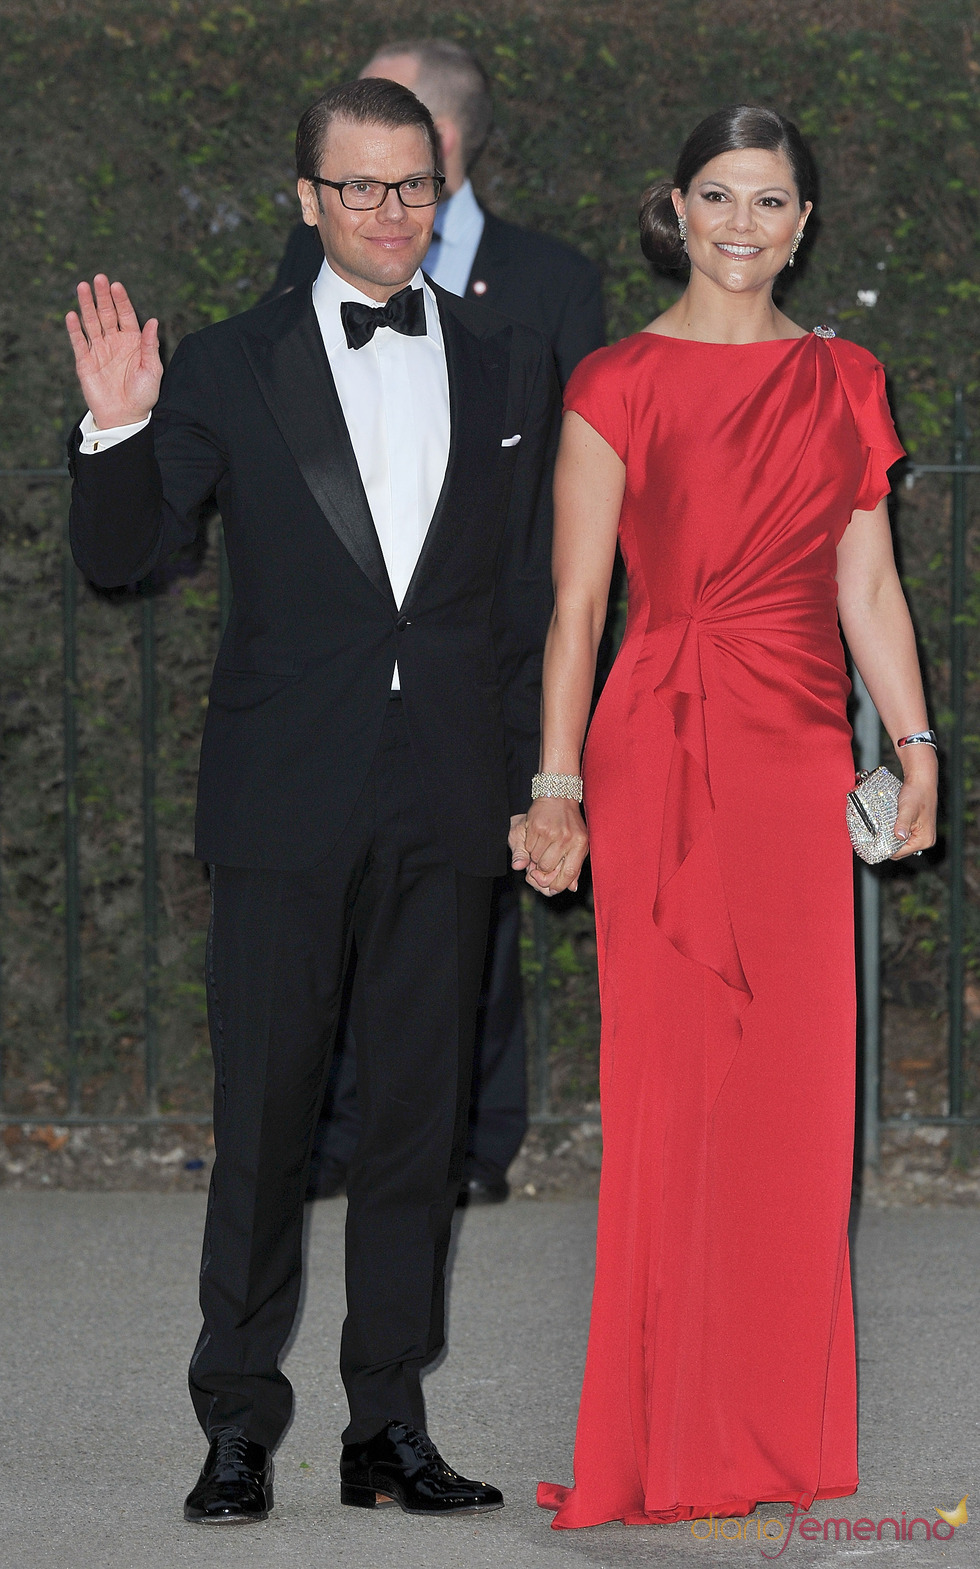 Victoria de Suecia y Daniel Wetling en la cena pre-boda real de Inglaterra